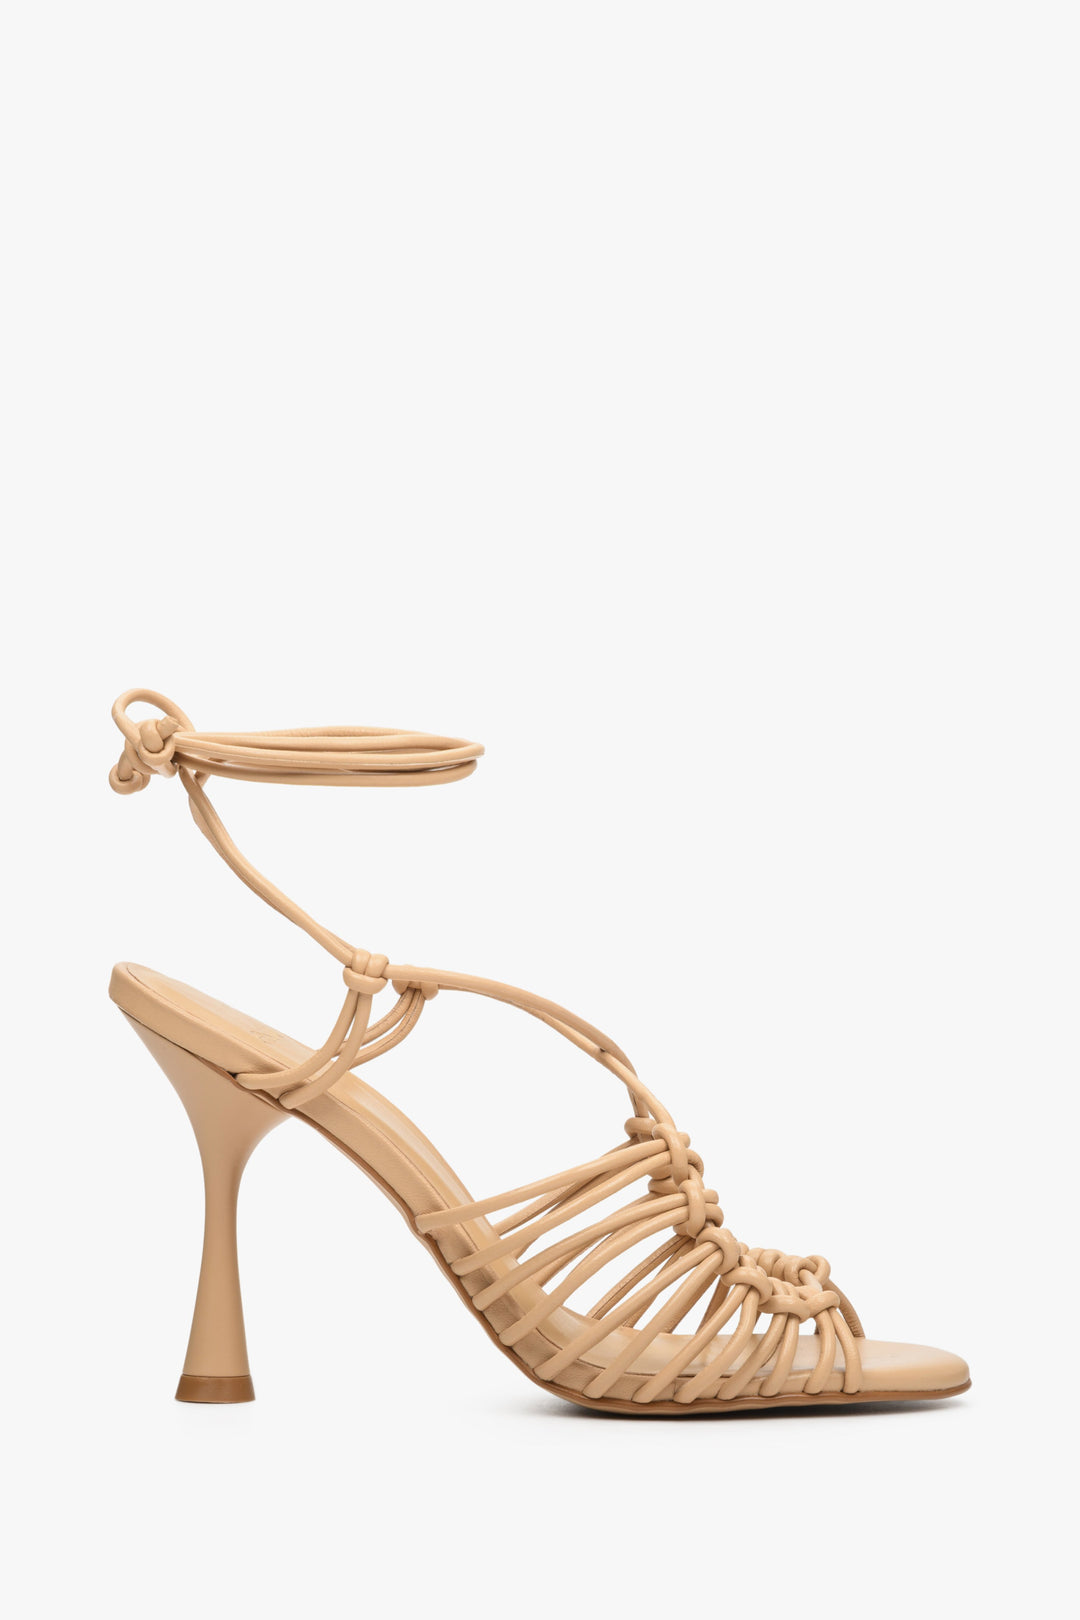 Beżowe wiązane sandały damskie na obcasie kielichowym Estro - profil buta.